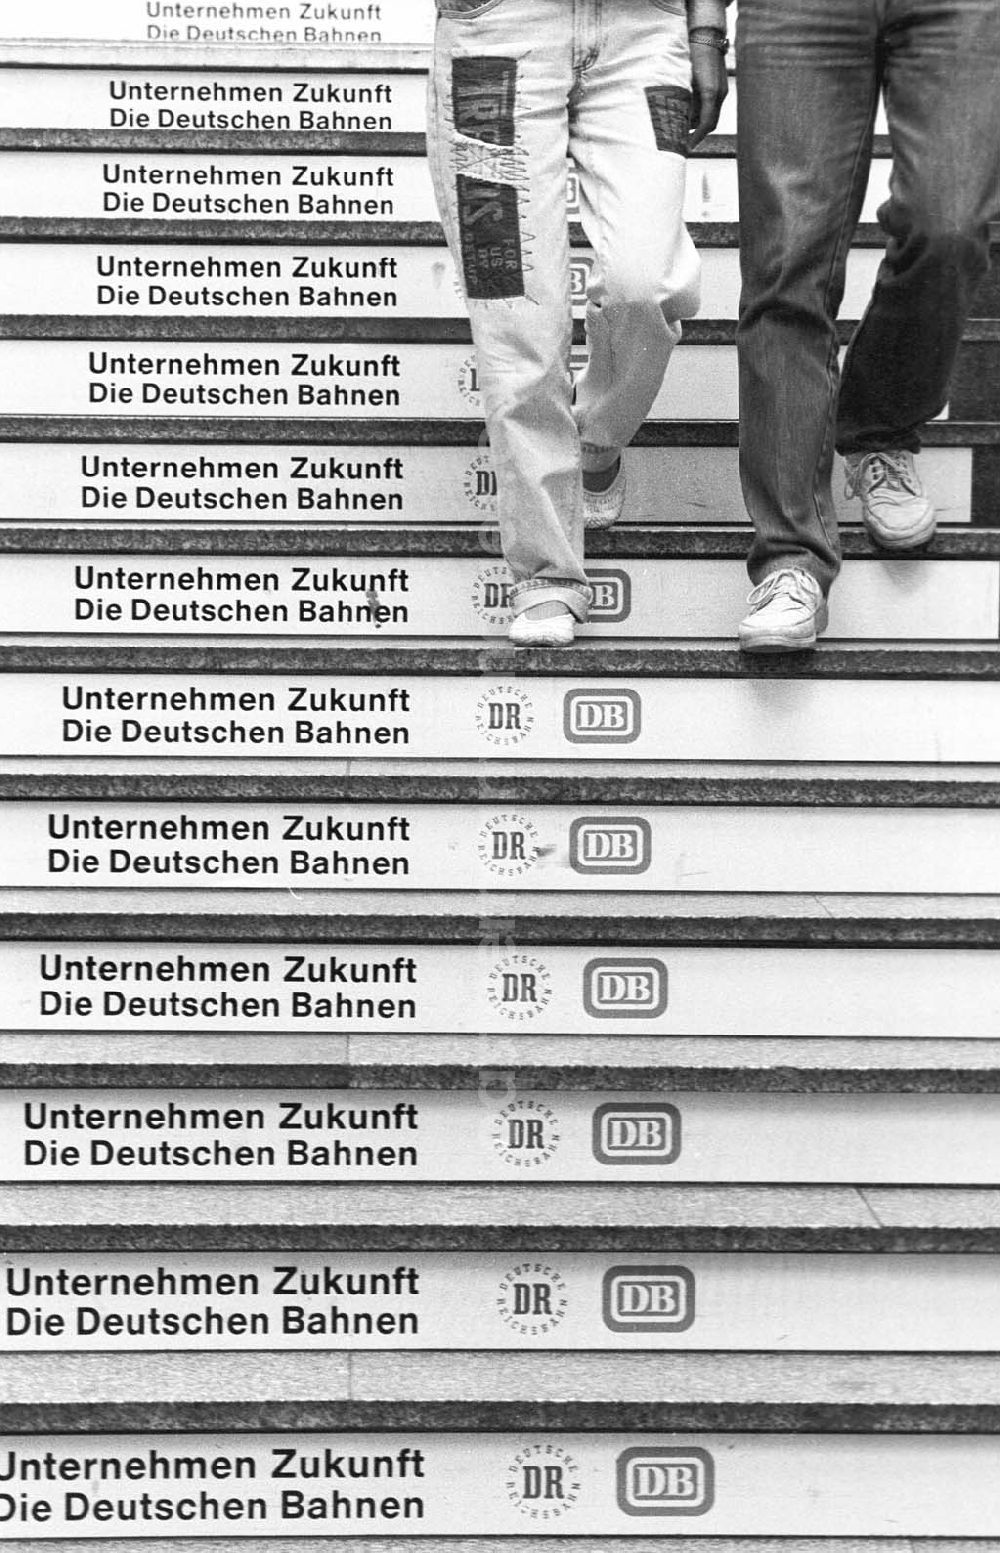 Berlin: Umschlagsnr.: 1993-176